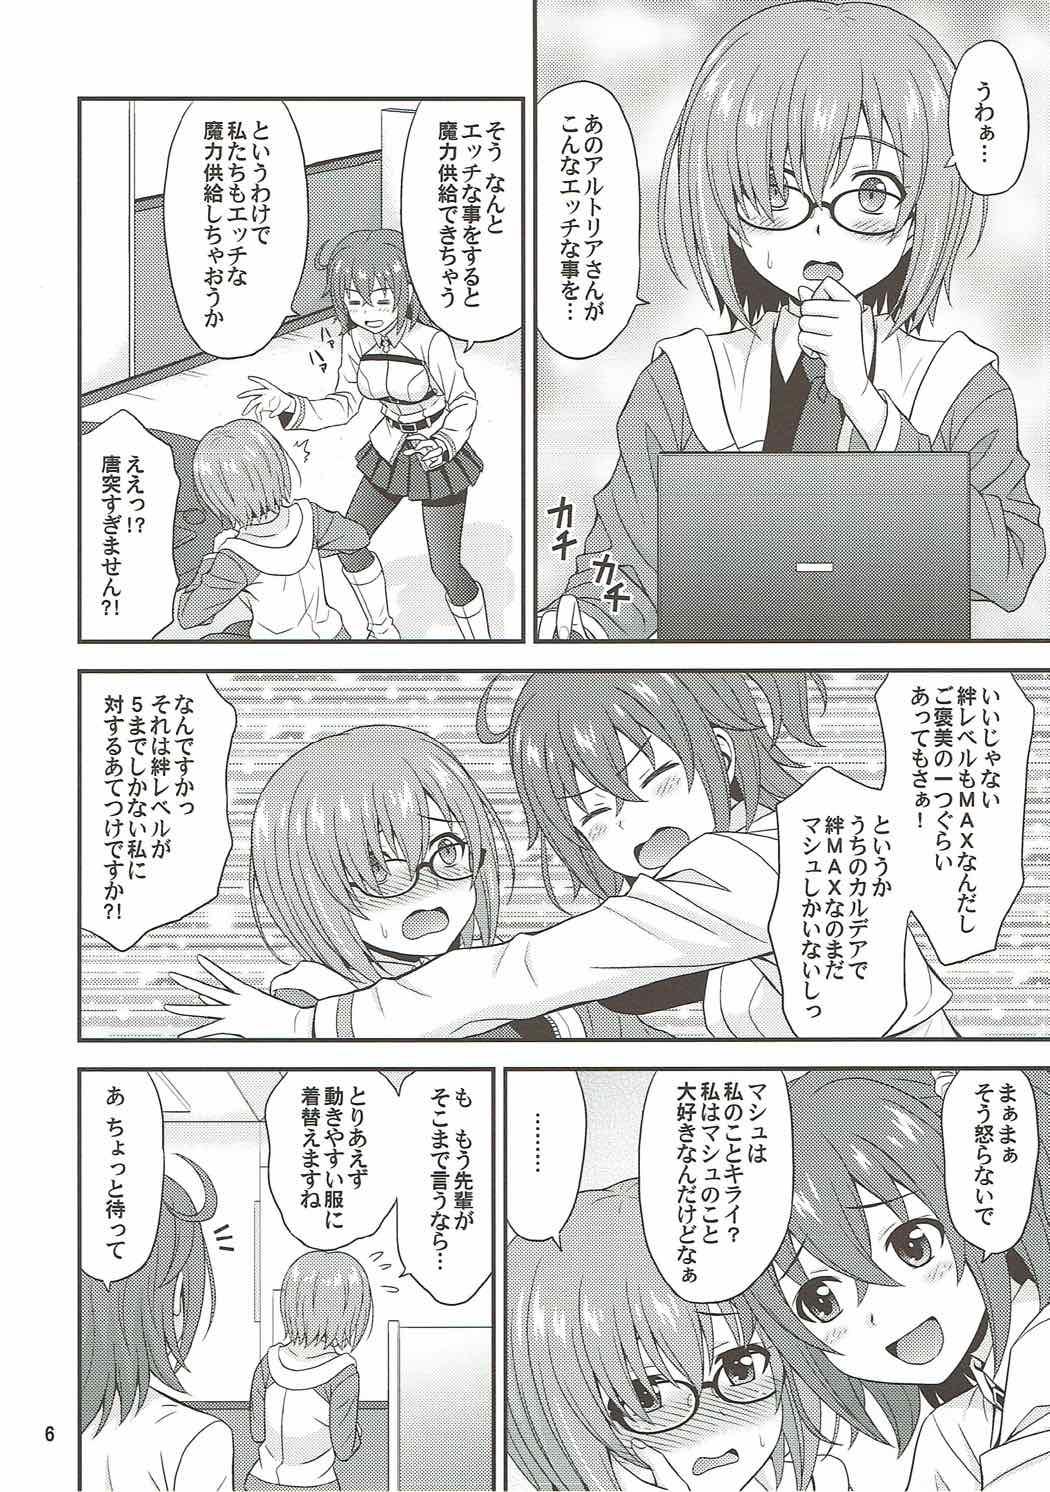 Masturbandose Uchi no Megane no Niau Tayoreru Kouhai ga Totemo Kawaii! - Fate grand order Aunt - Page 5